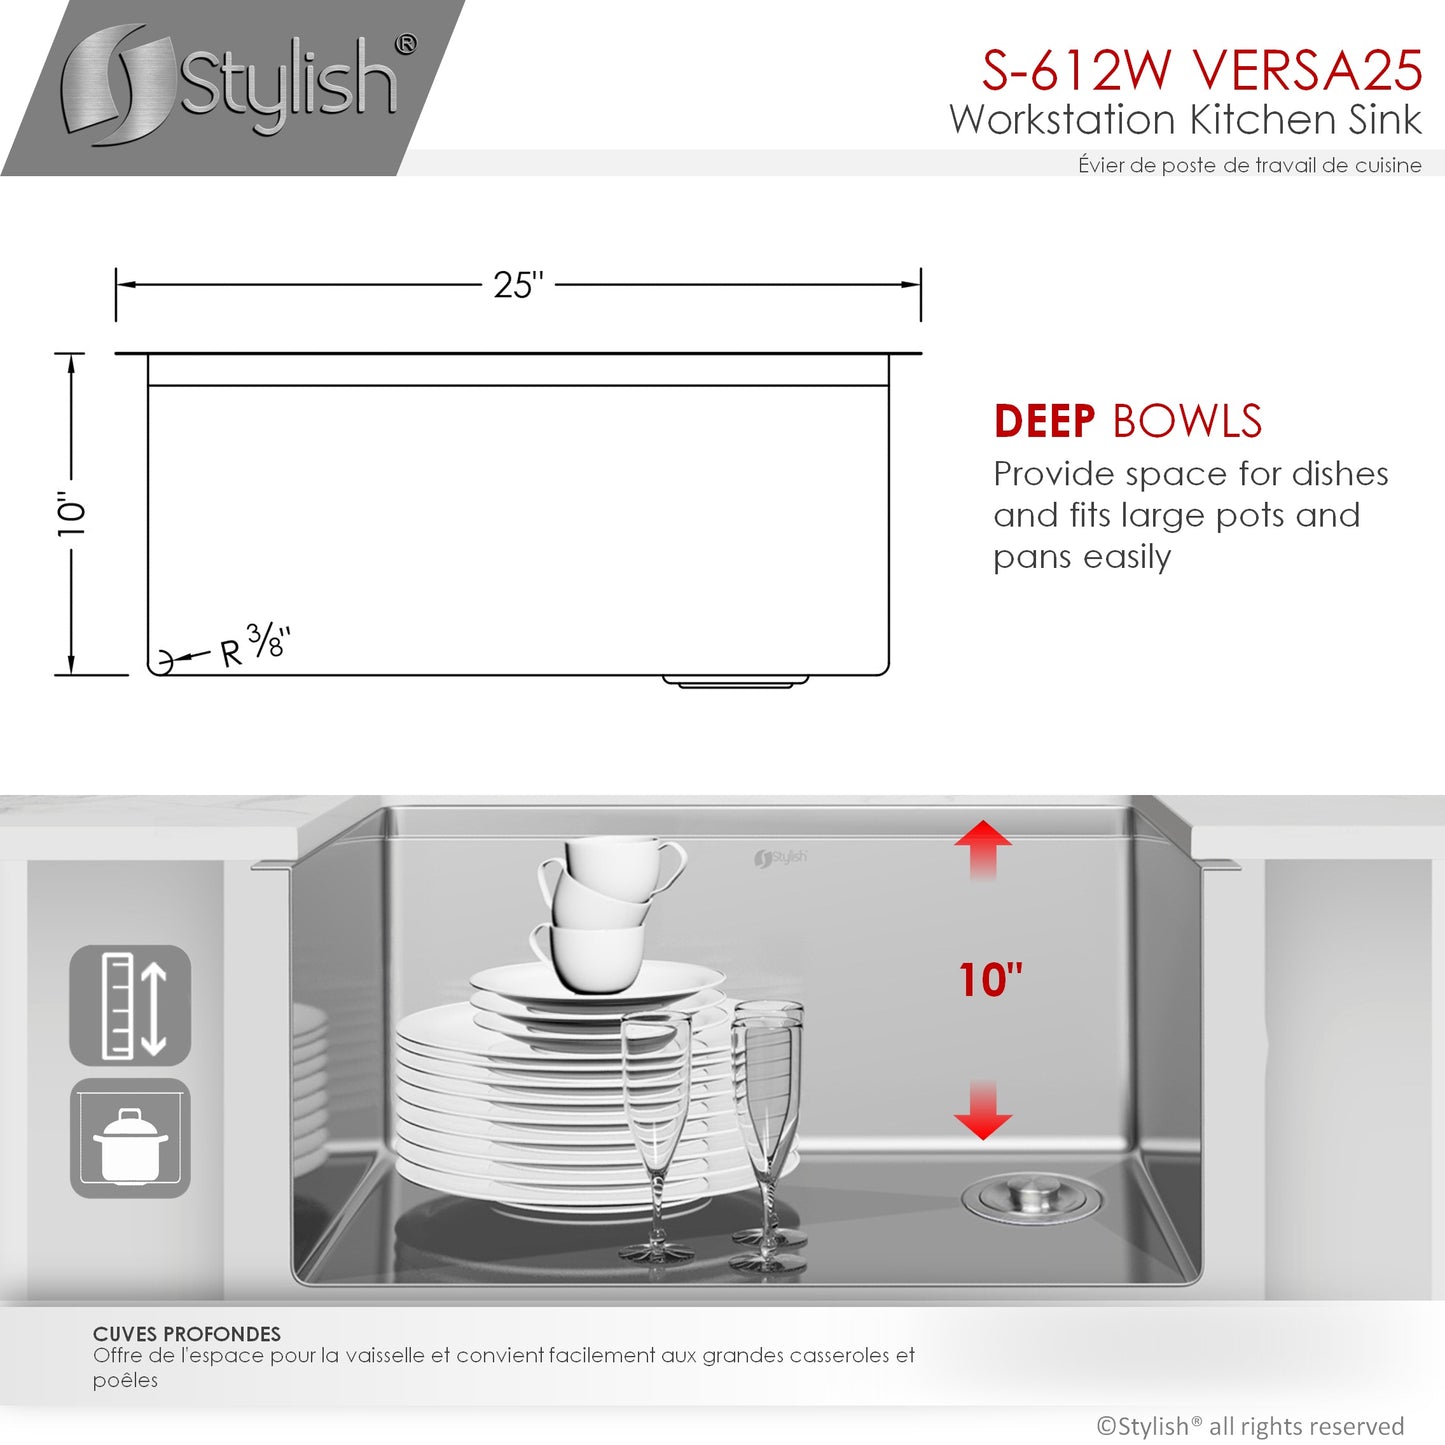 STYLISH 25" Versa Workstation Single Bowl Undermount 16 Gauge Stainless Steel Kitchen Sink with Built in Accessories